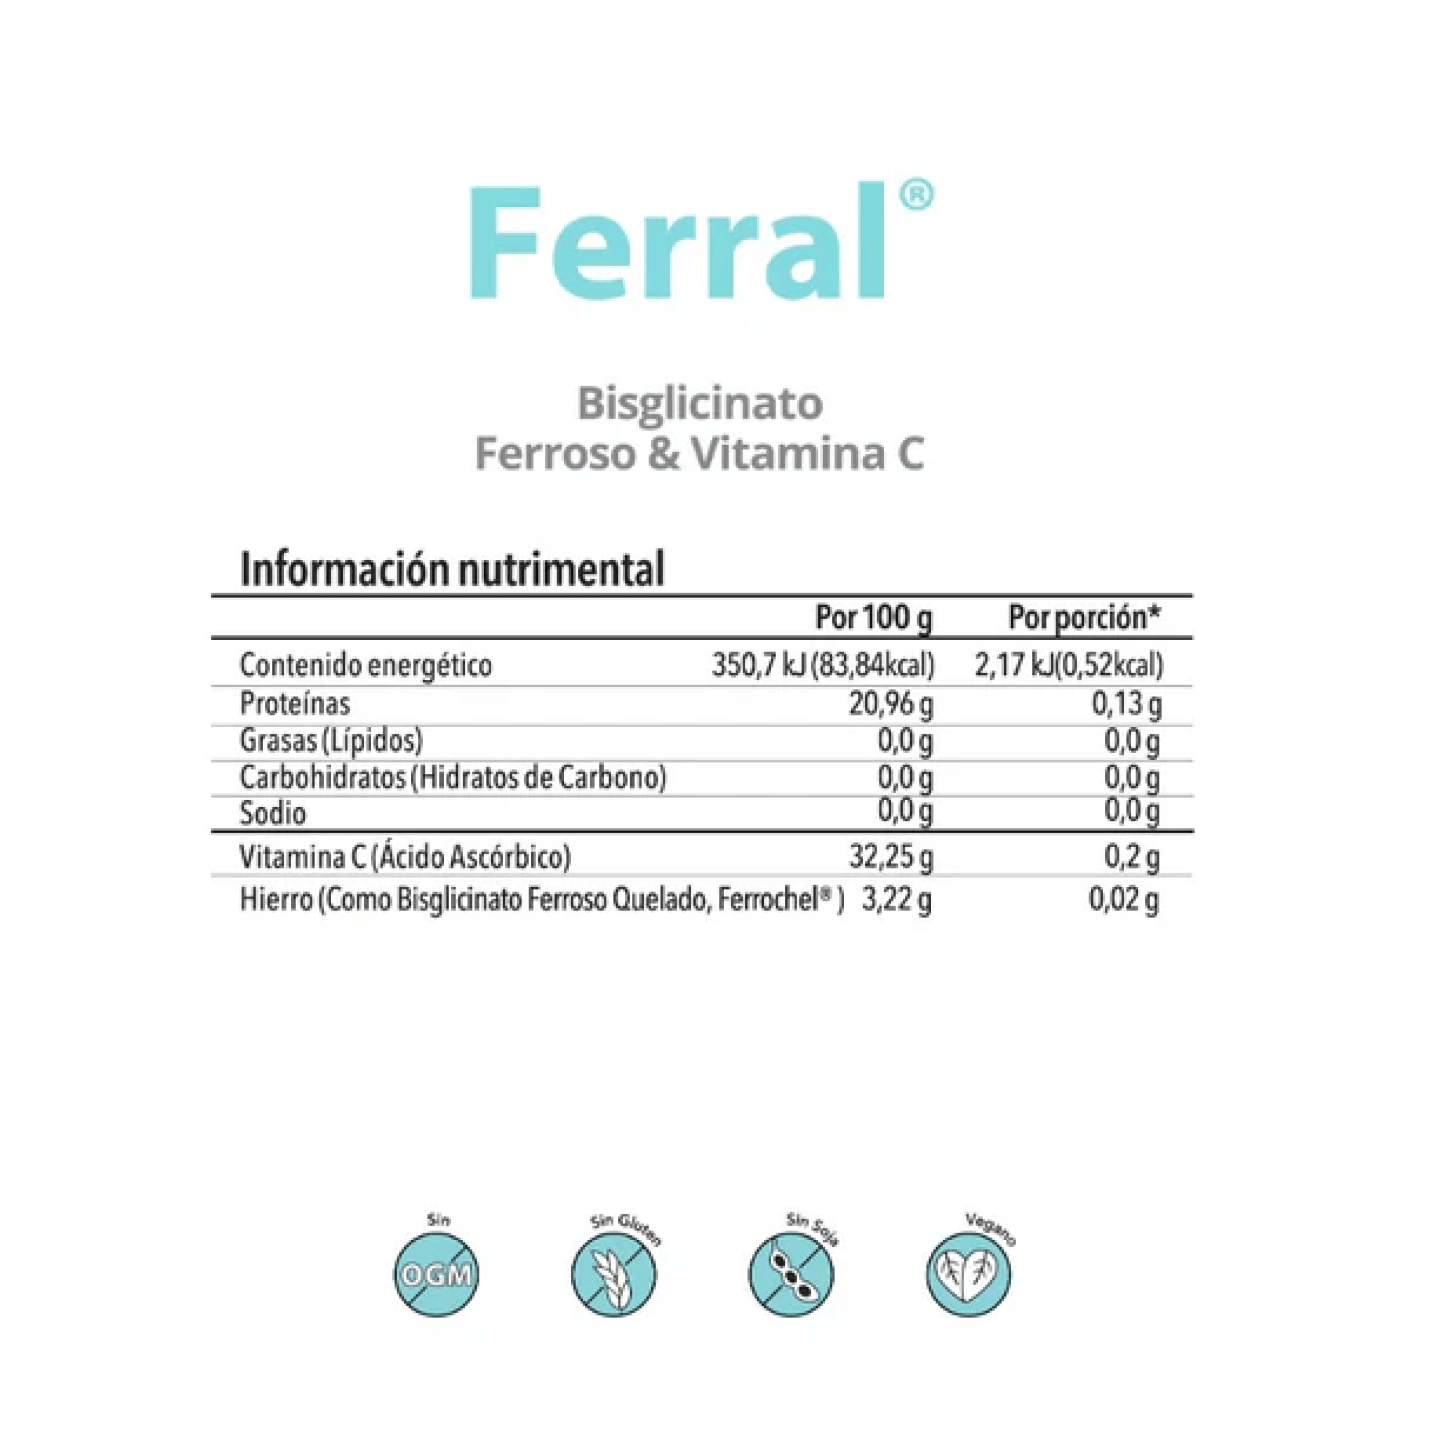 Ferral | Bisglicinato Ferroso & Vitamina C